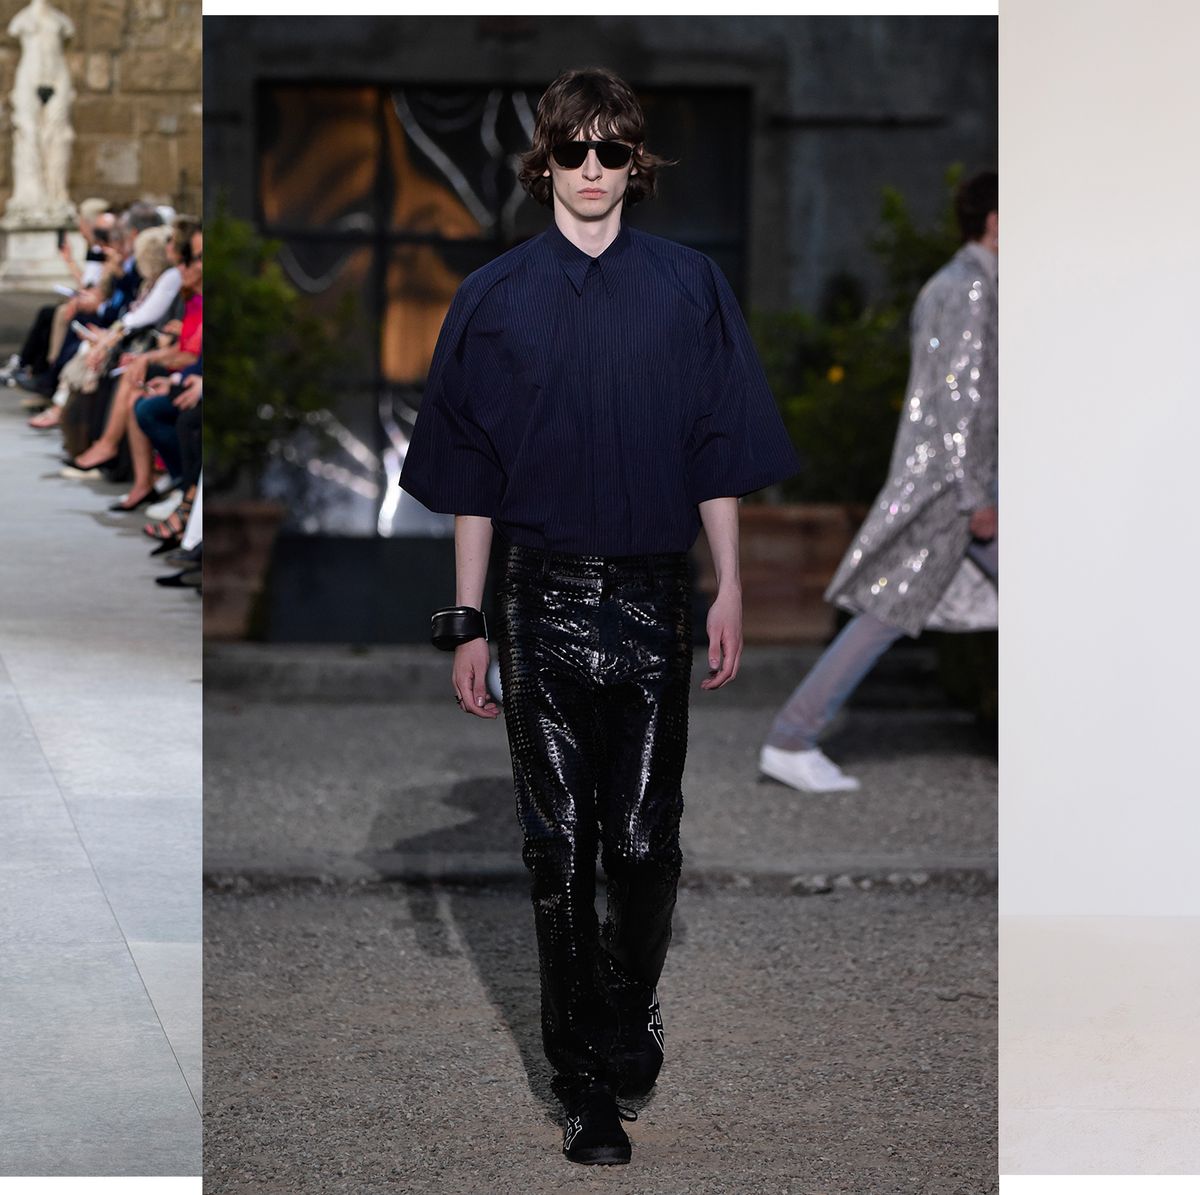 Las tendencias en ropa de hombre para la primavera 2020 La pasarela de Pitti Uomo 96 en Florencia